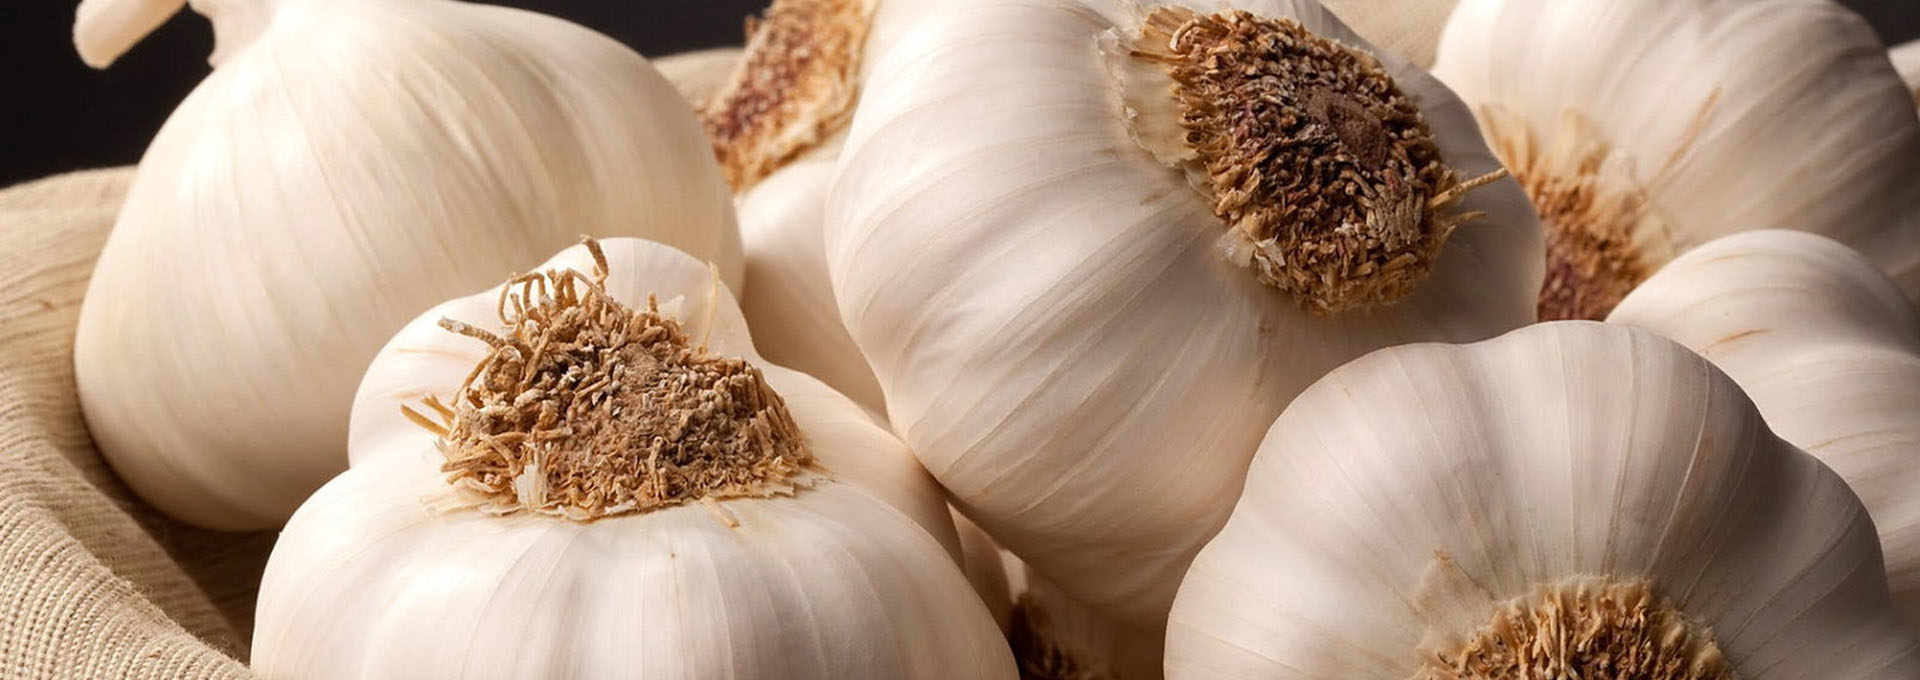 The Voghiera Garlic